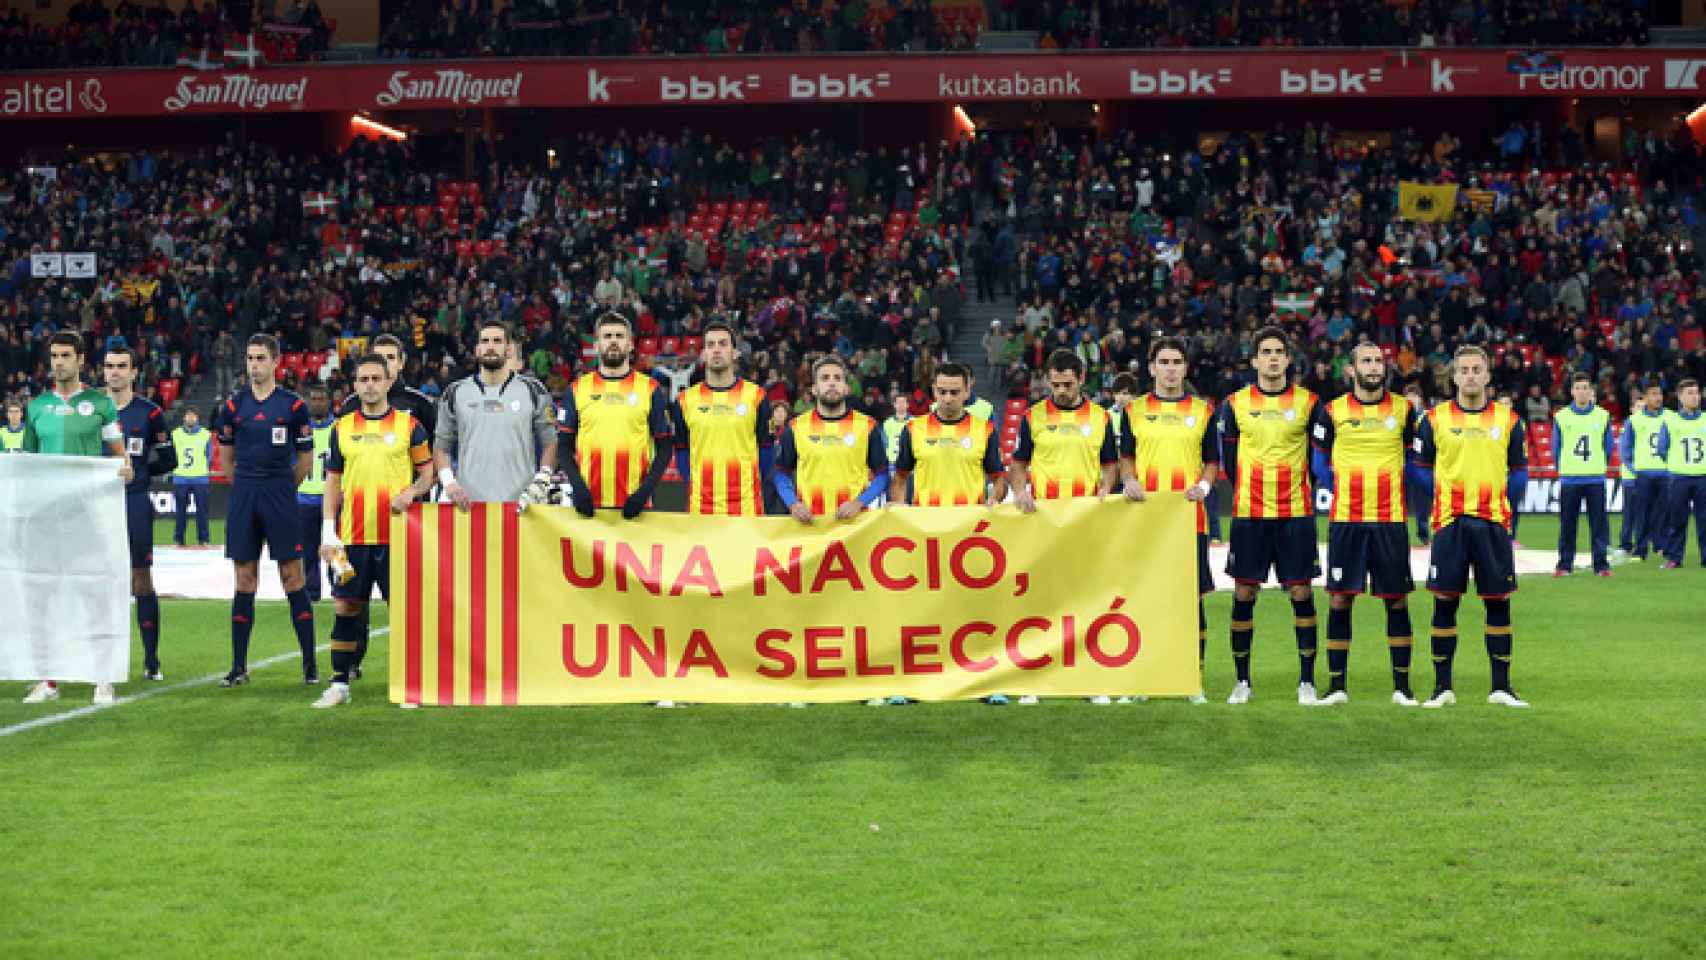 Piqué, junto a otros jugadores catalanes, porta la pancarta 'Una nació, una selecció'.